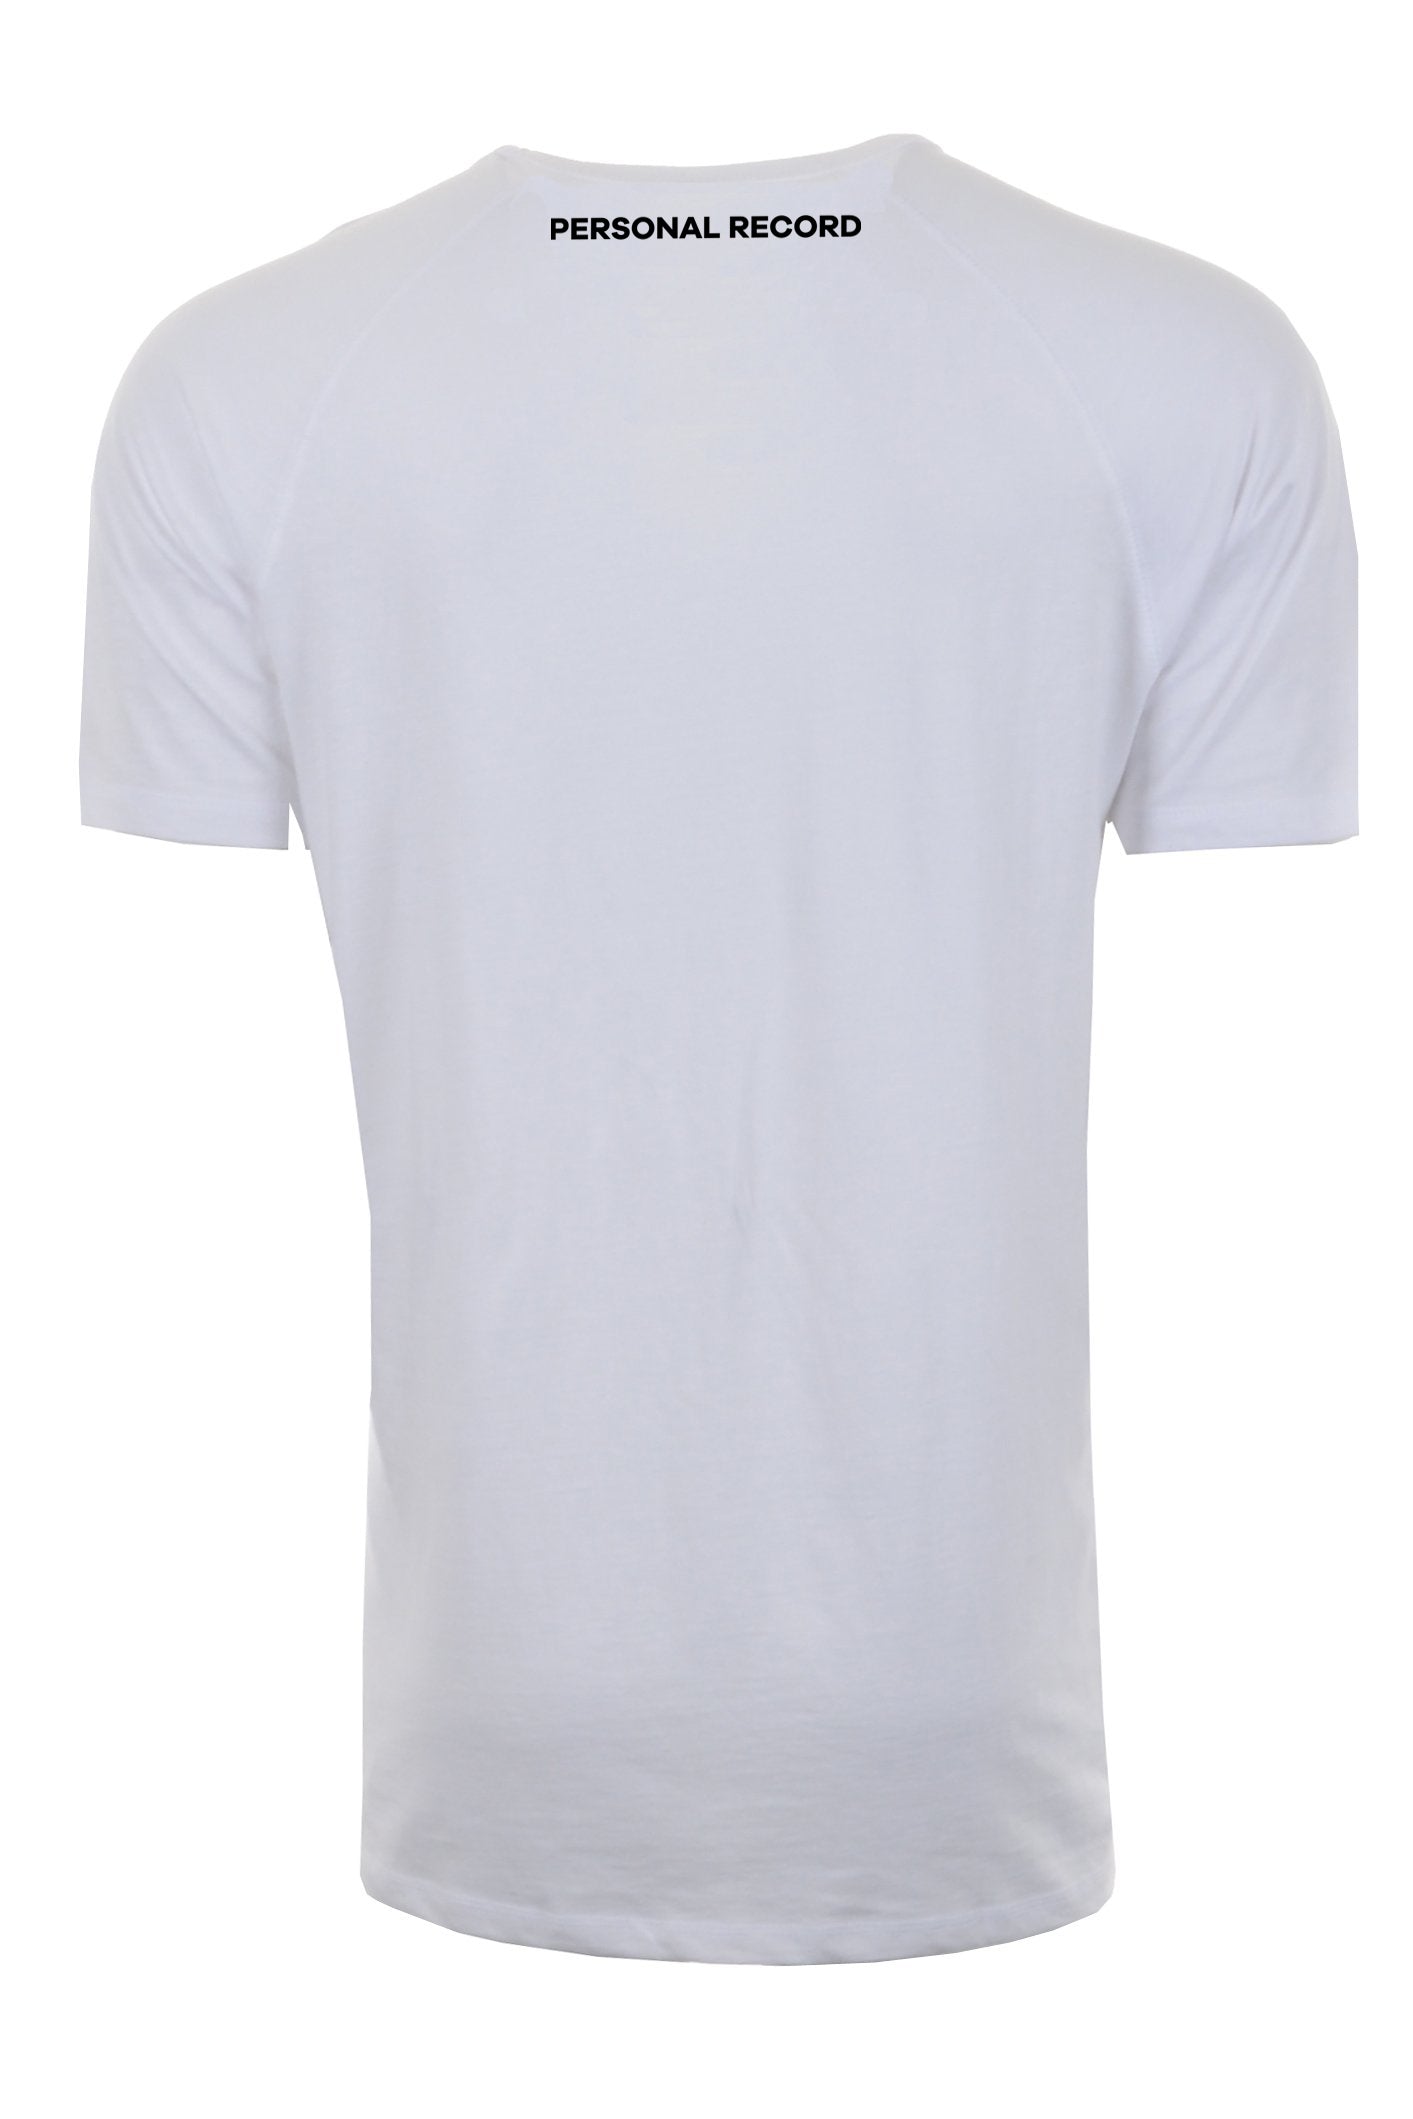 PR Raglan Tech Shirts - PR402 - White